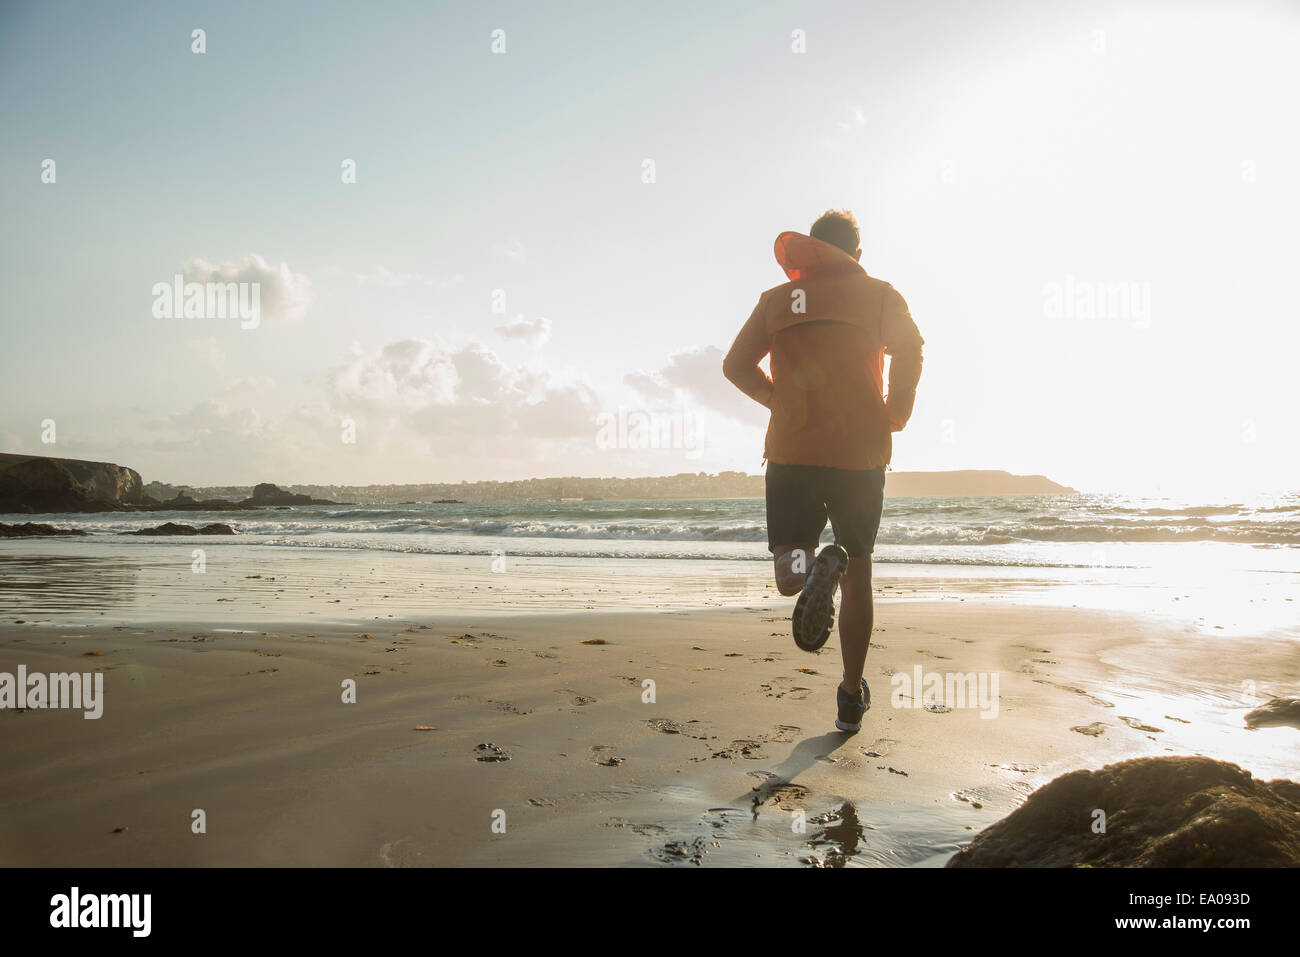 Mature man running on sand, along coastline Stock Photo